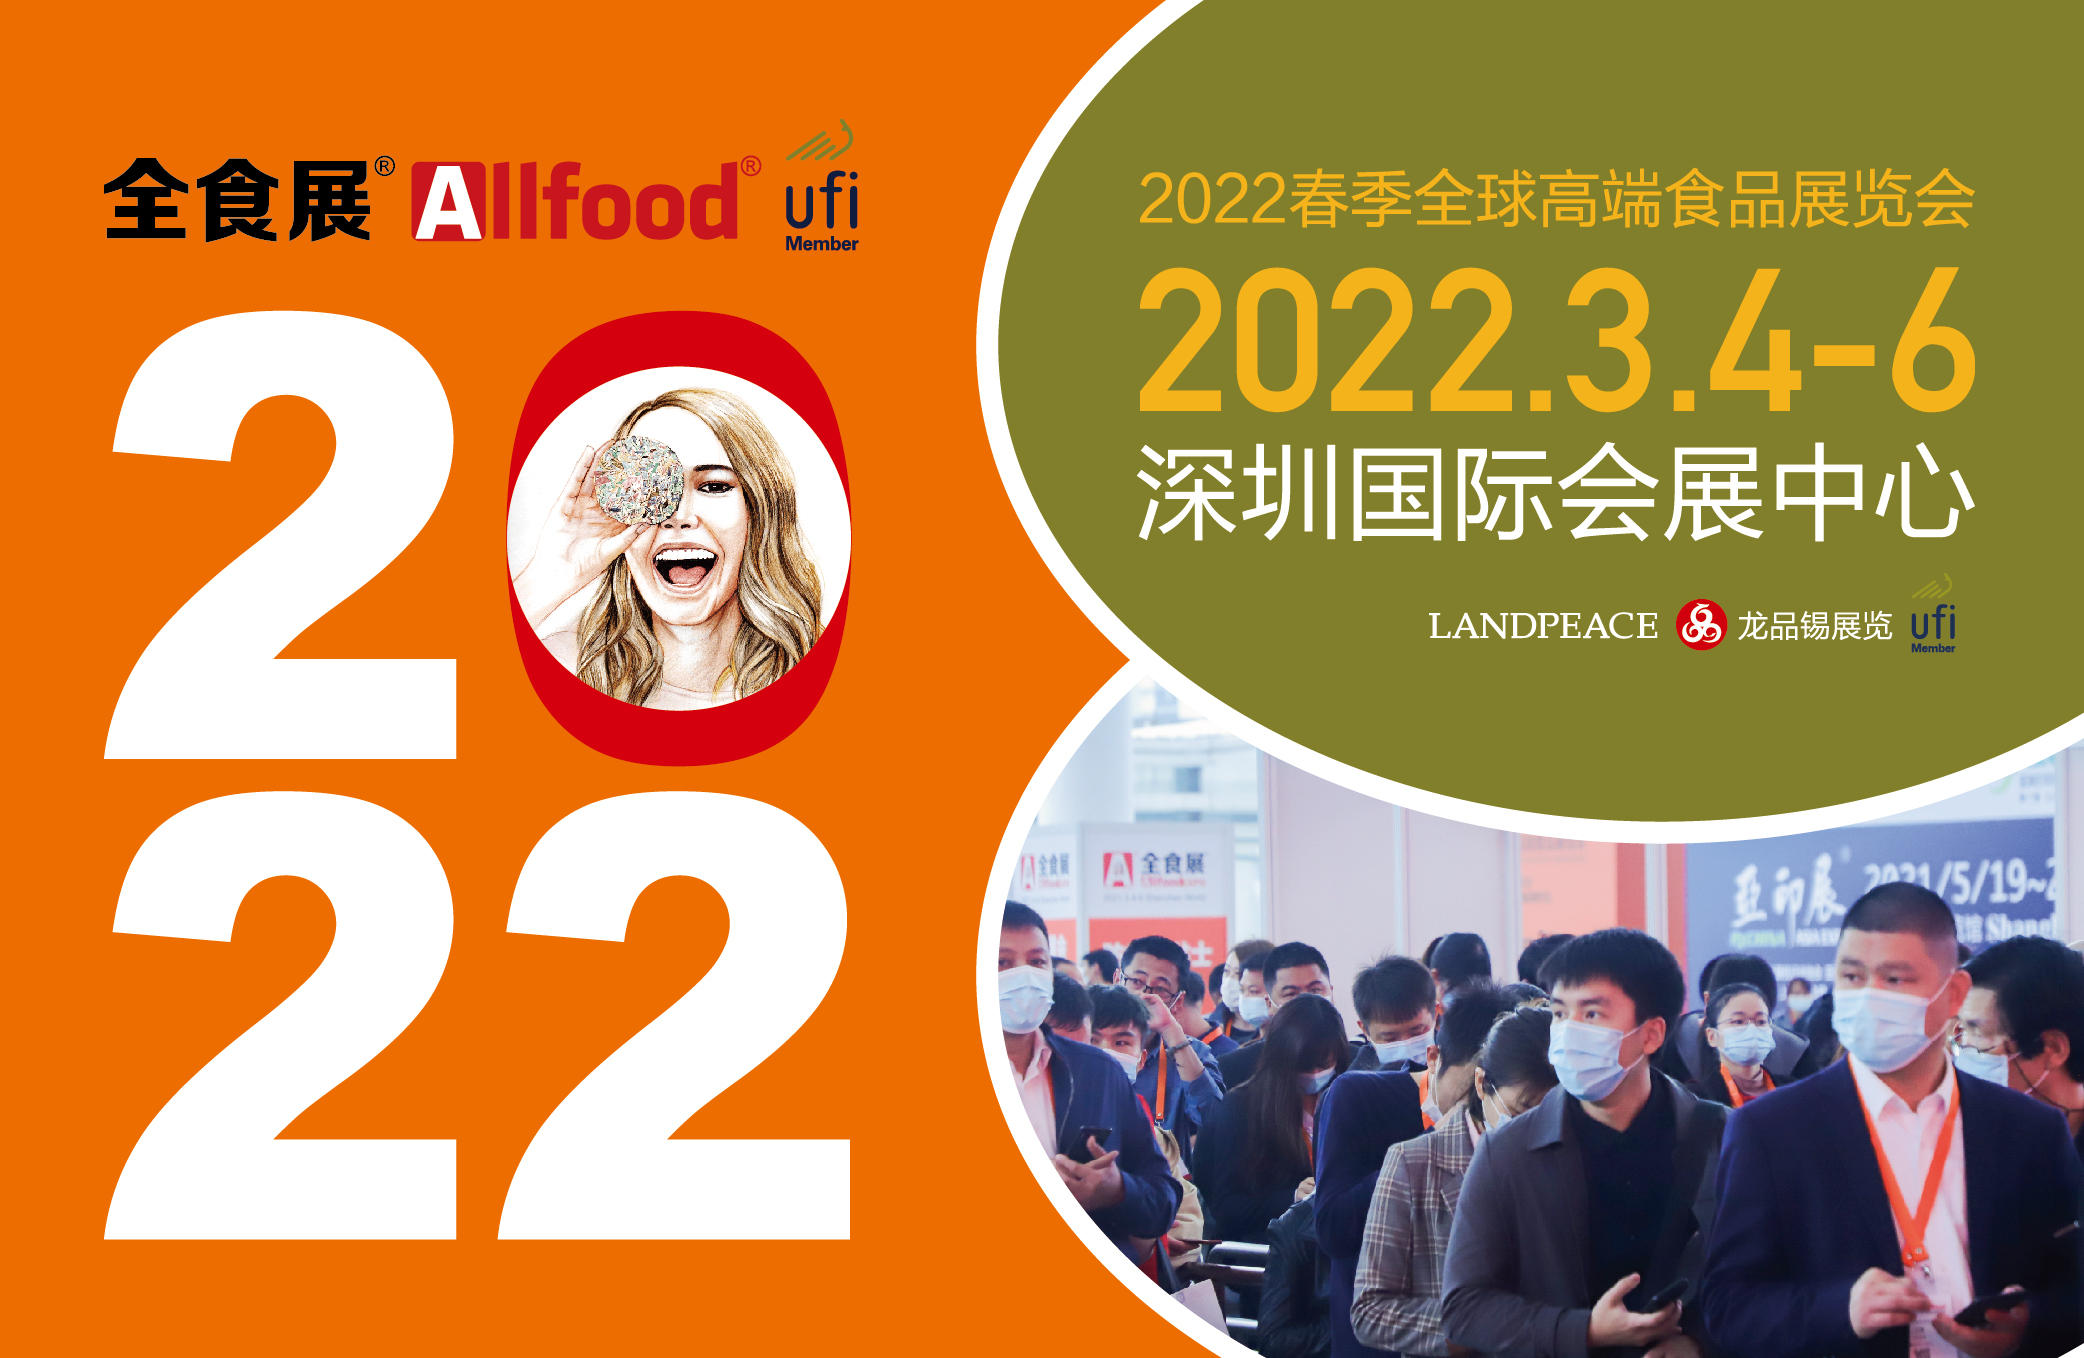 2022 高端食品展览会 全食展